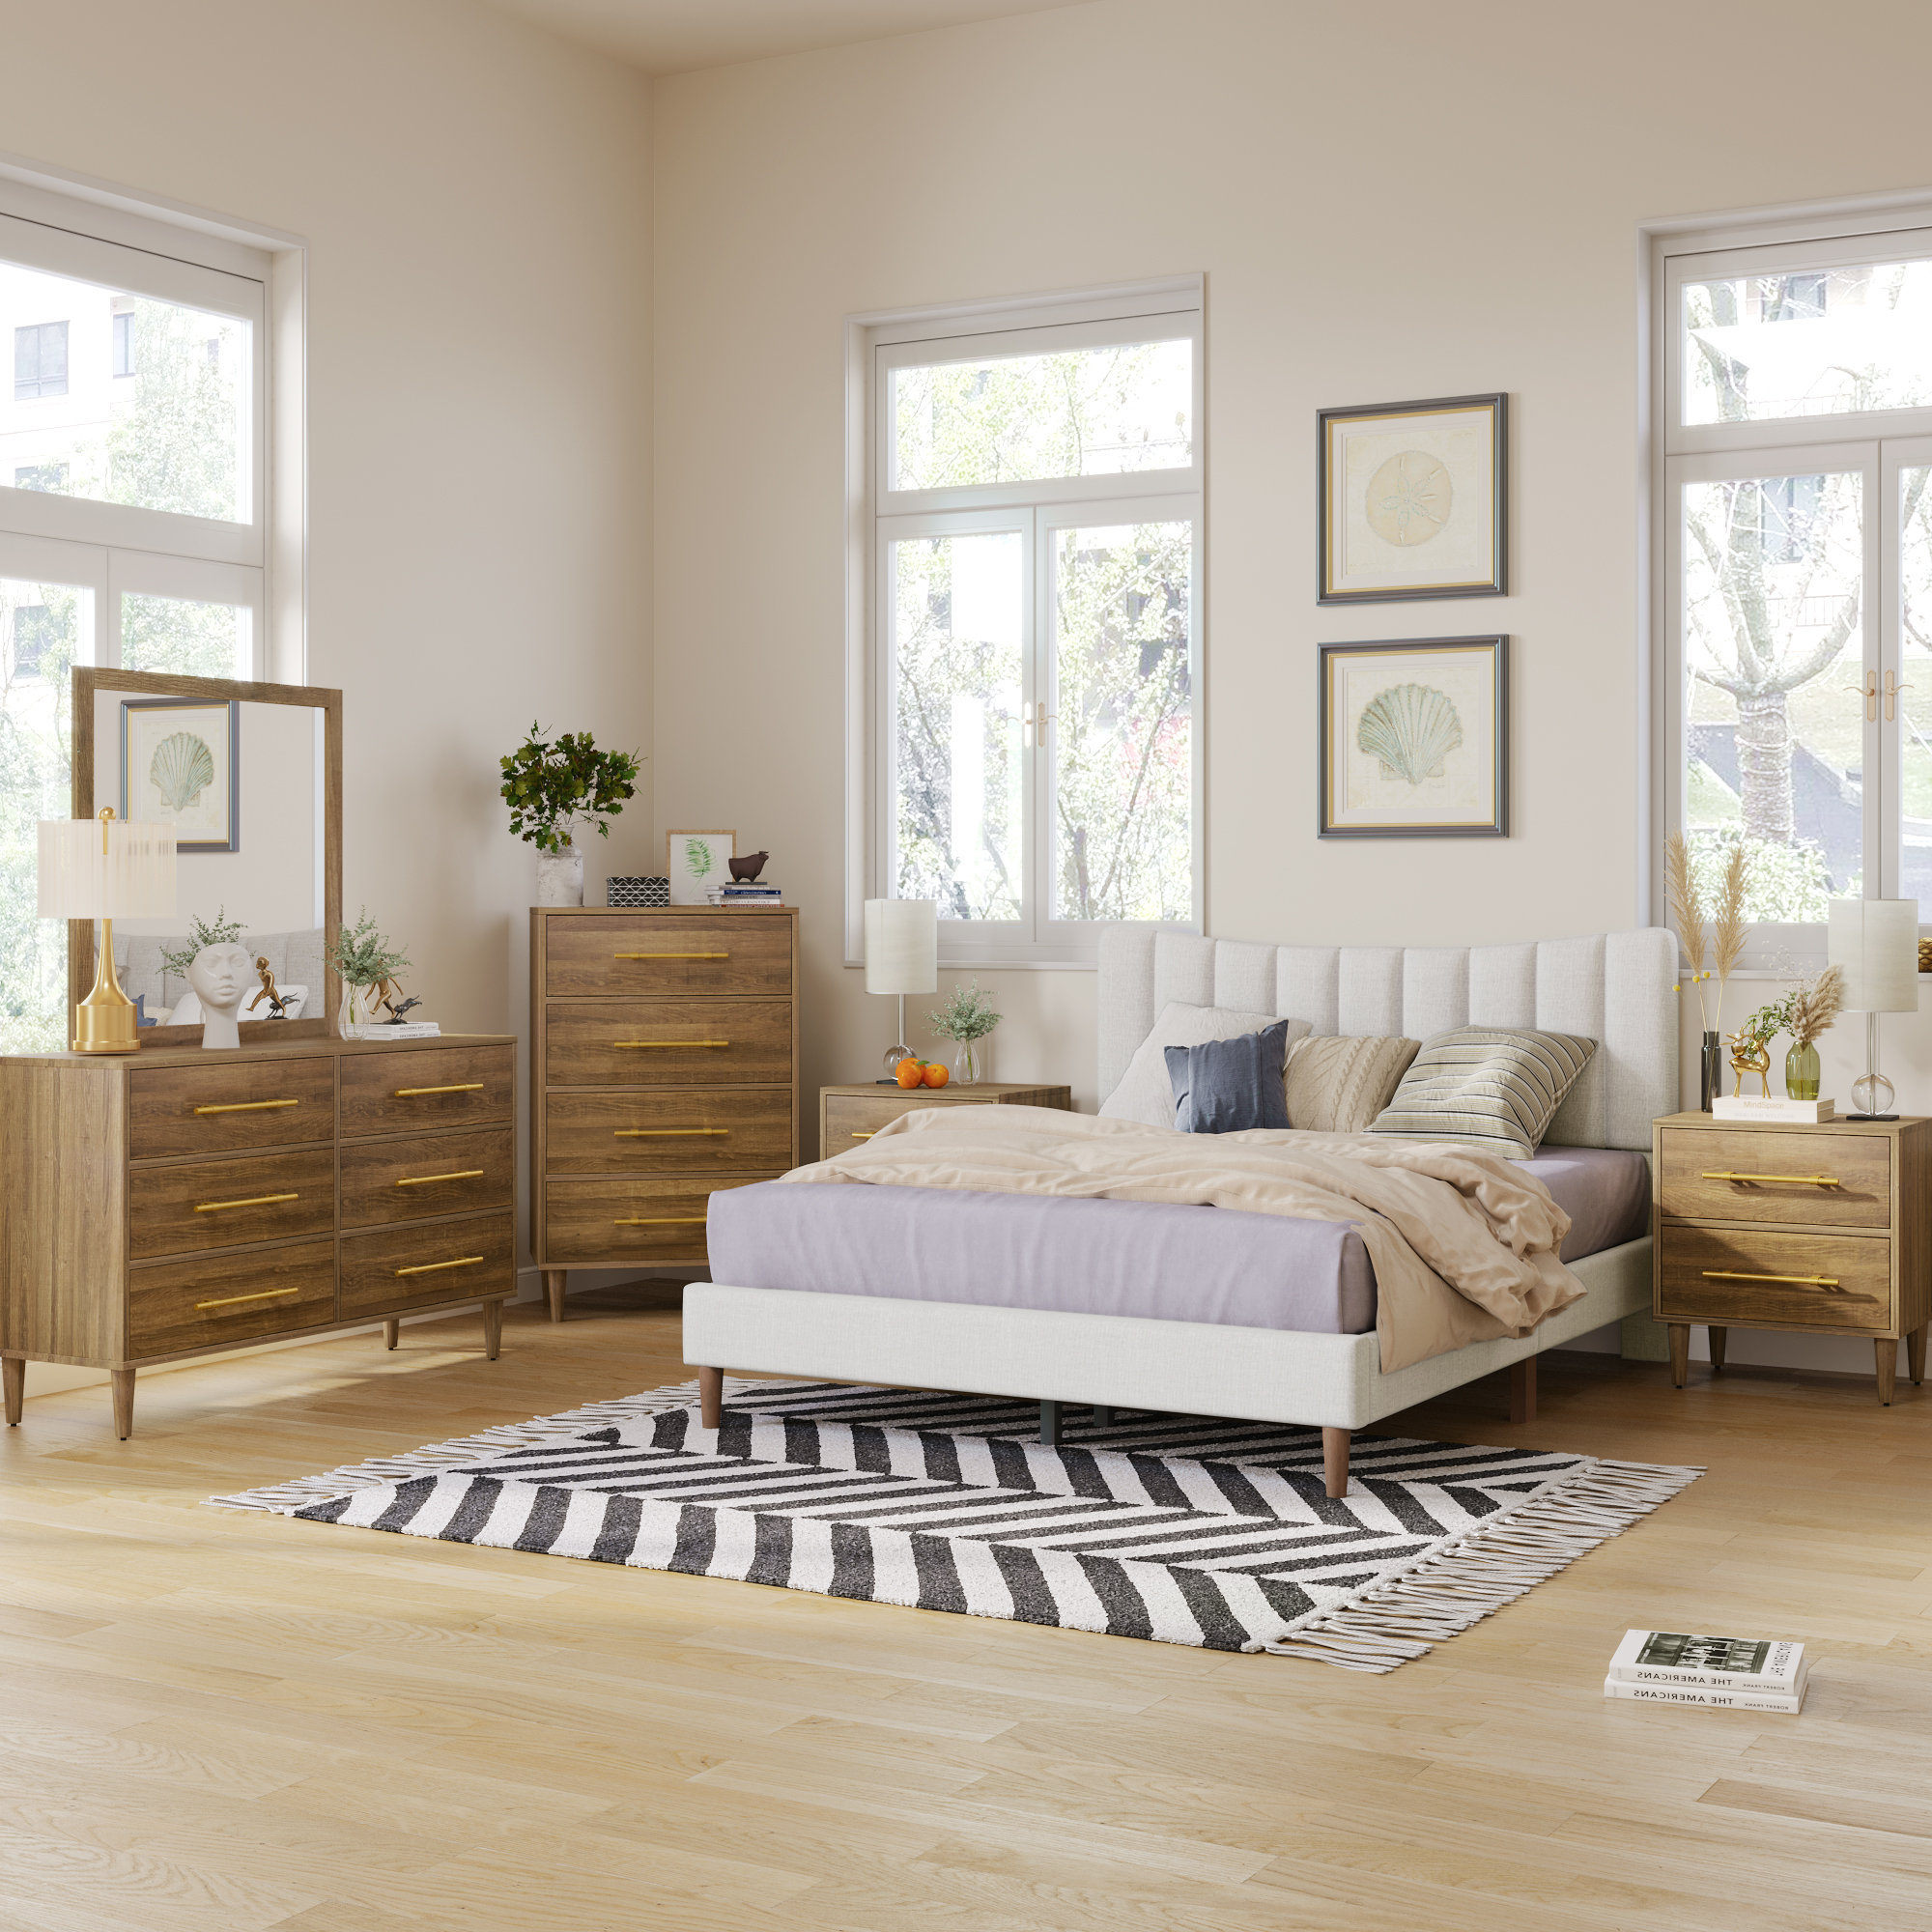 6-Pieces Wooden Bedroom Set - BS600440AAC